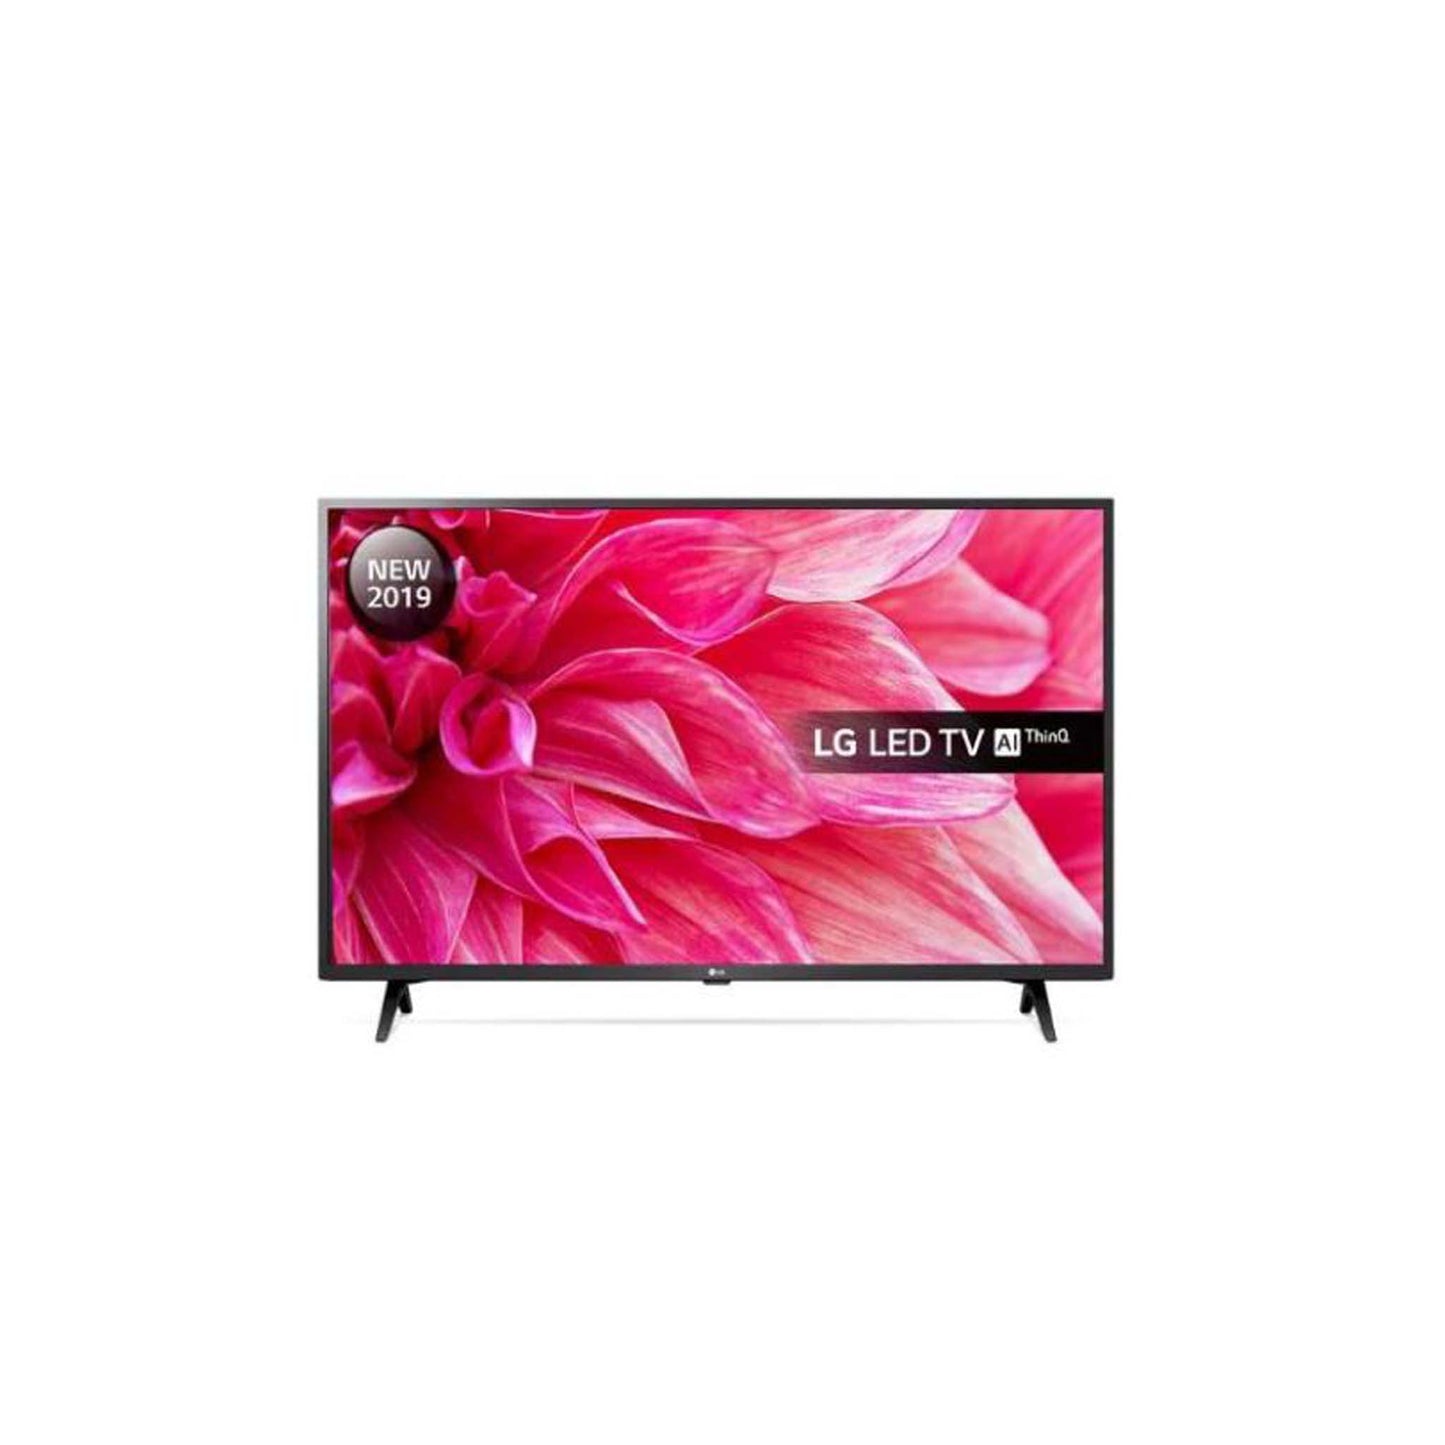 LG 43LM6300PLA 43" Smart Full HD HDR LED TV